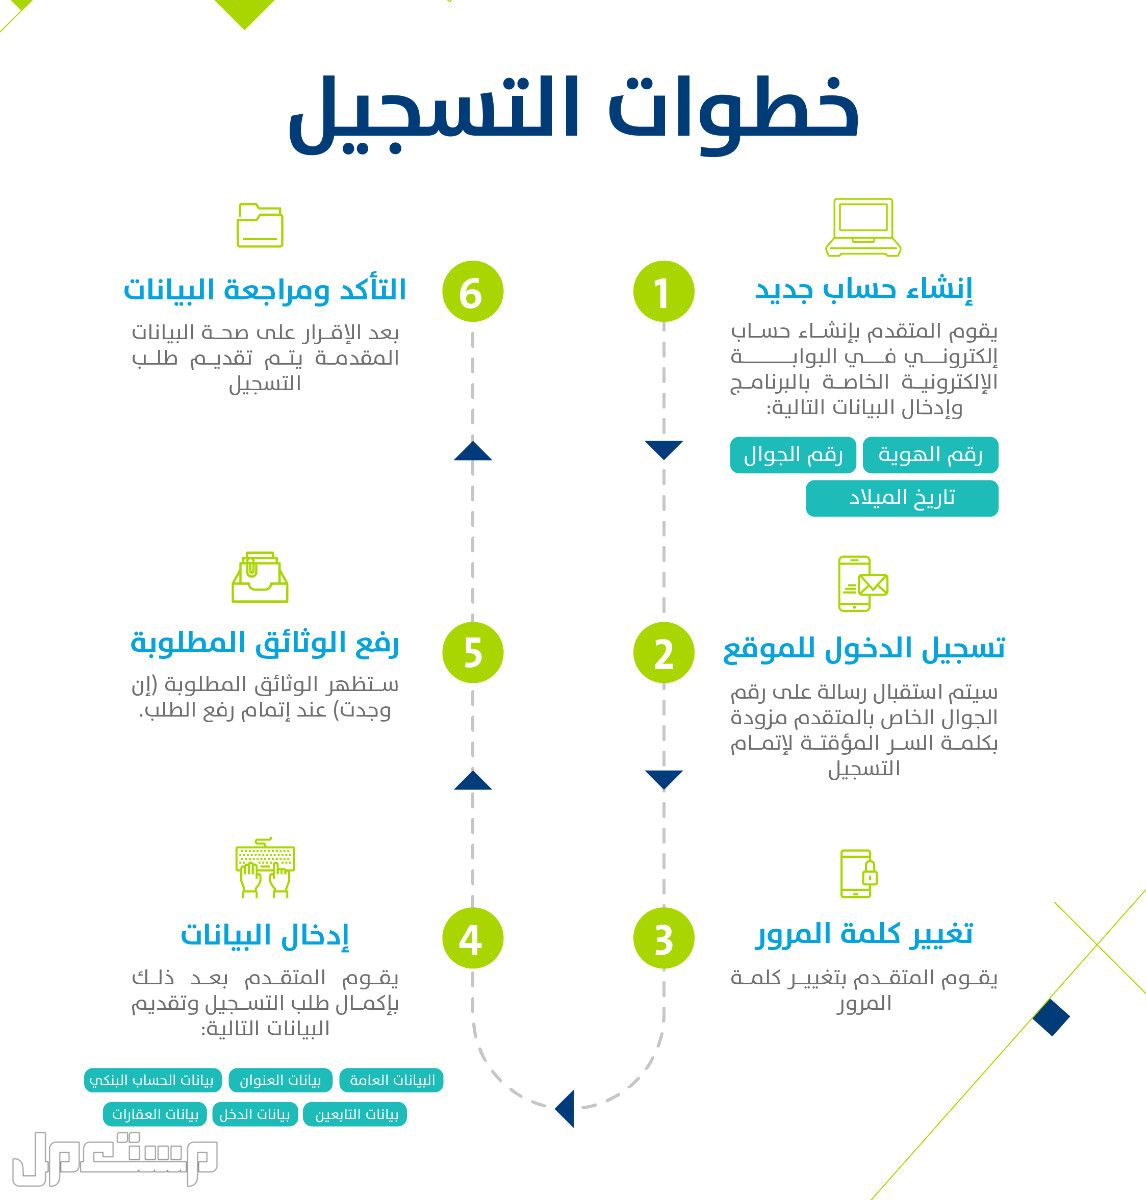 حساب المواطن: تعرف على حقيقة تأثير وثيقة العمل الحر على الدعم في قطر